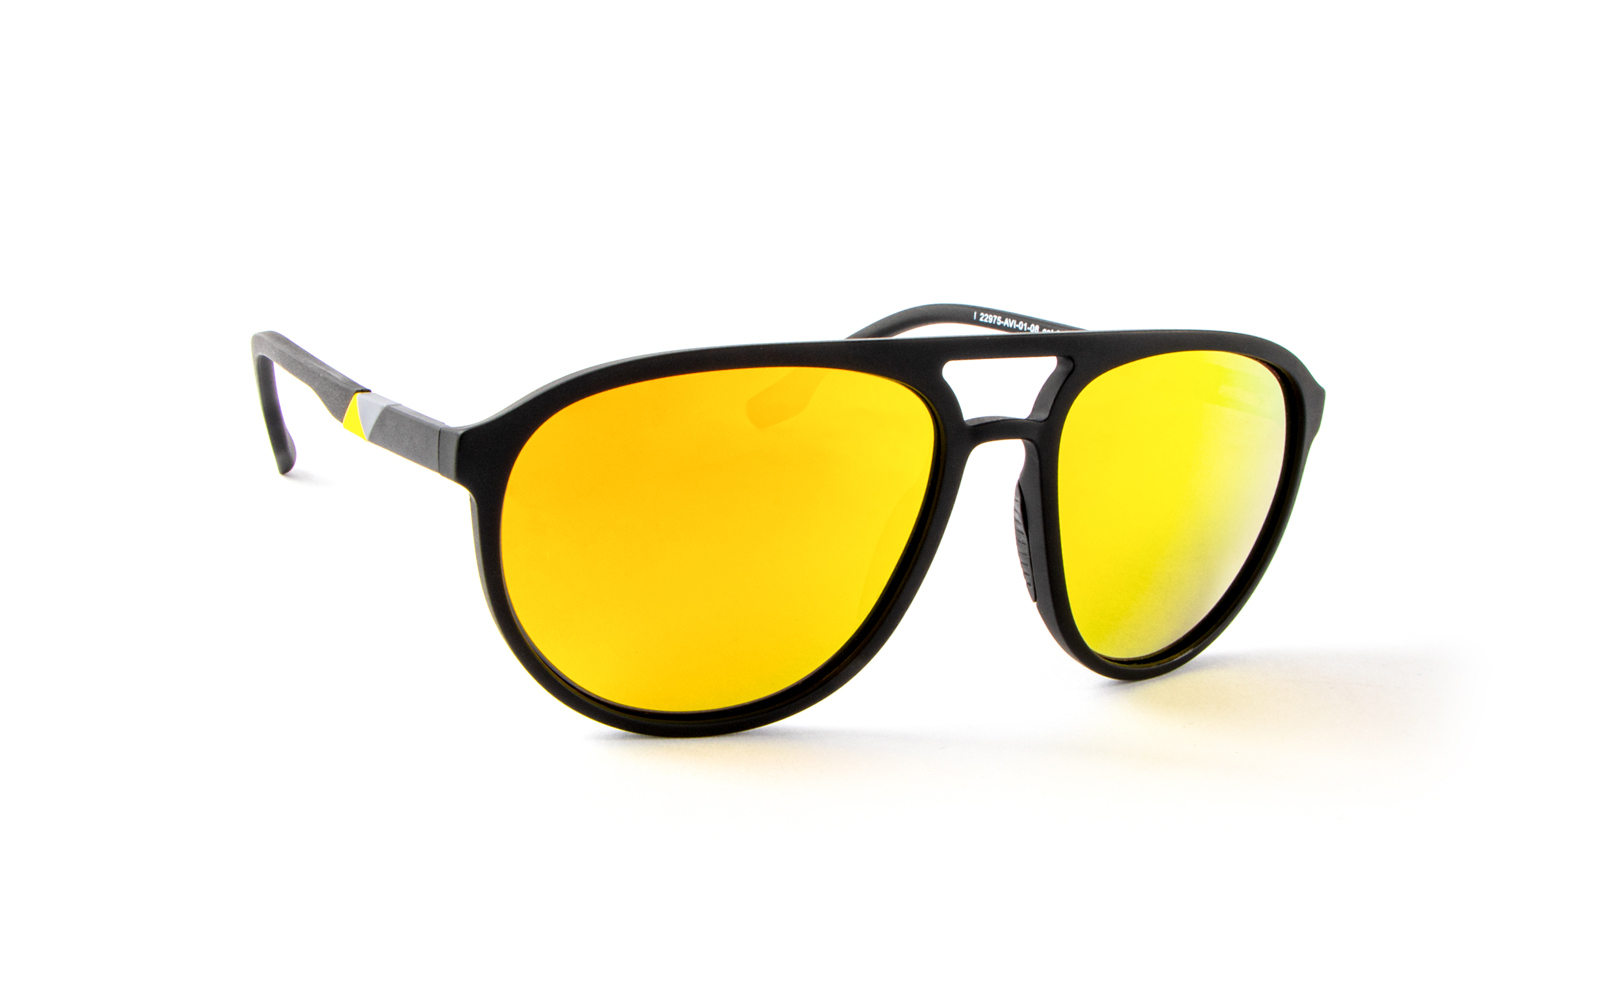 Invicta Men's Aviator Aviator Sunglasses, Yellow (22975-AVI-01-08)